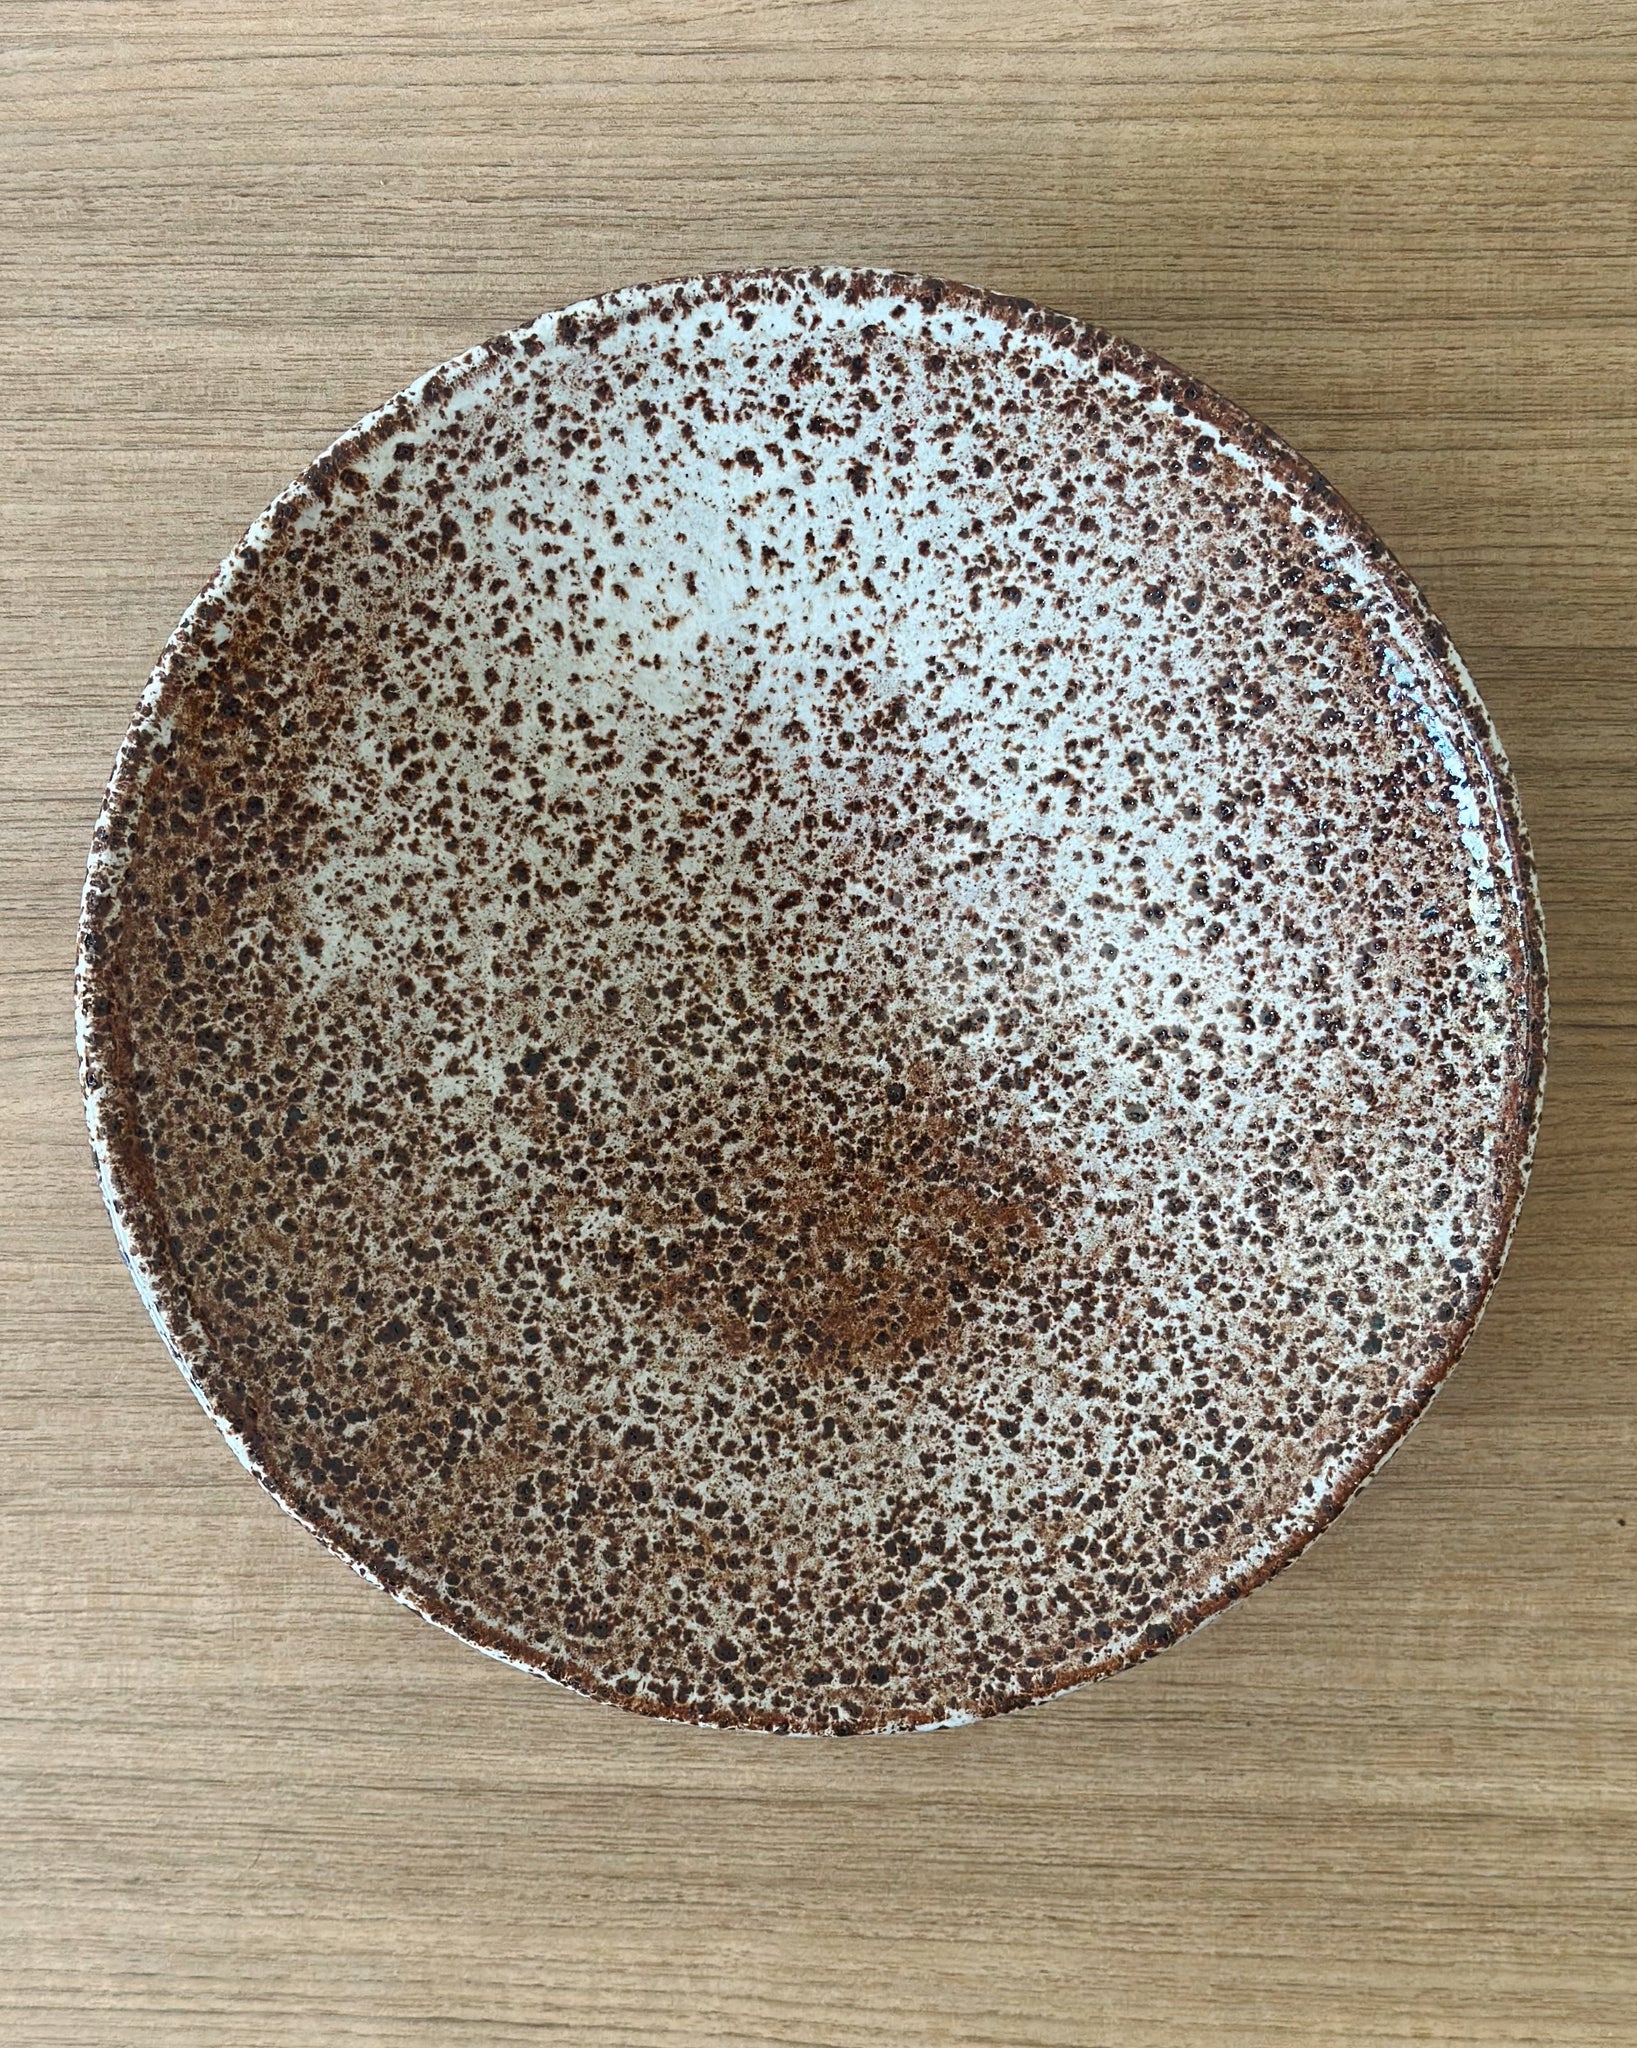 Speckled sabi bowl